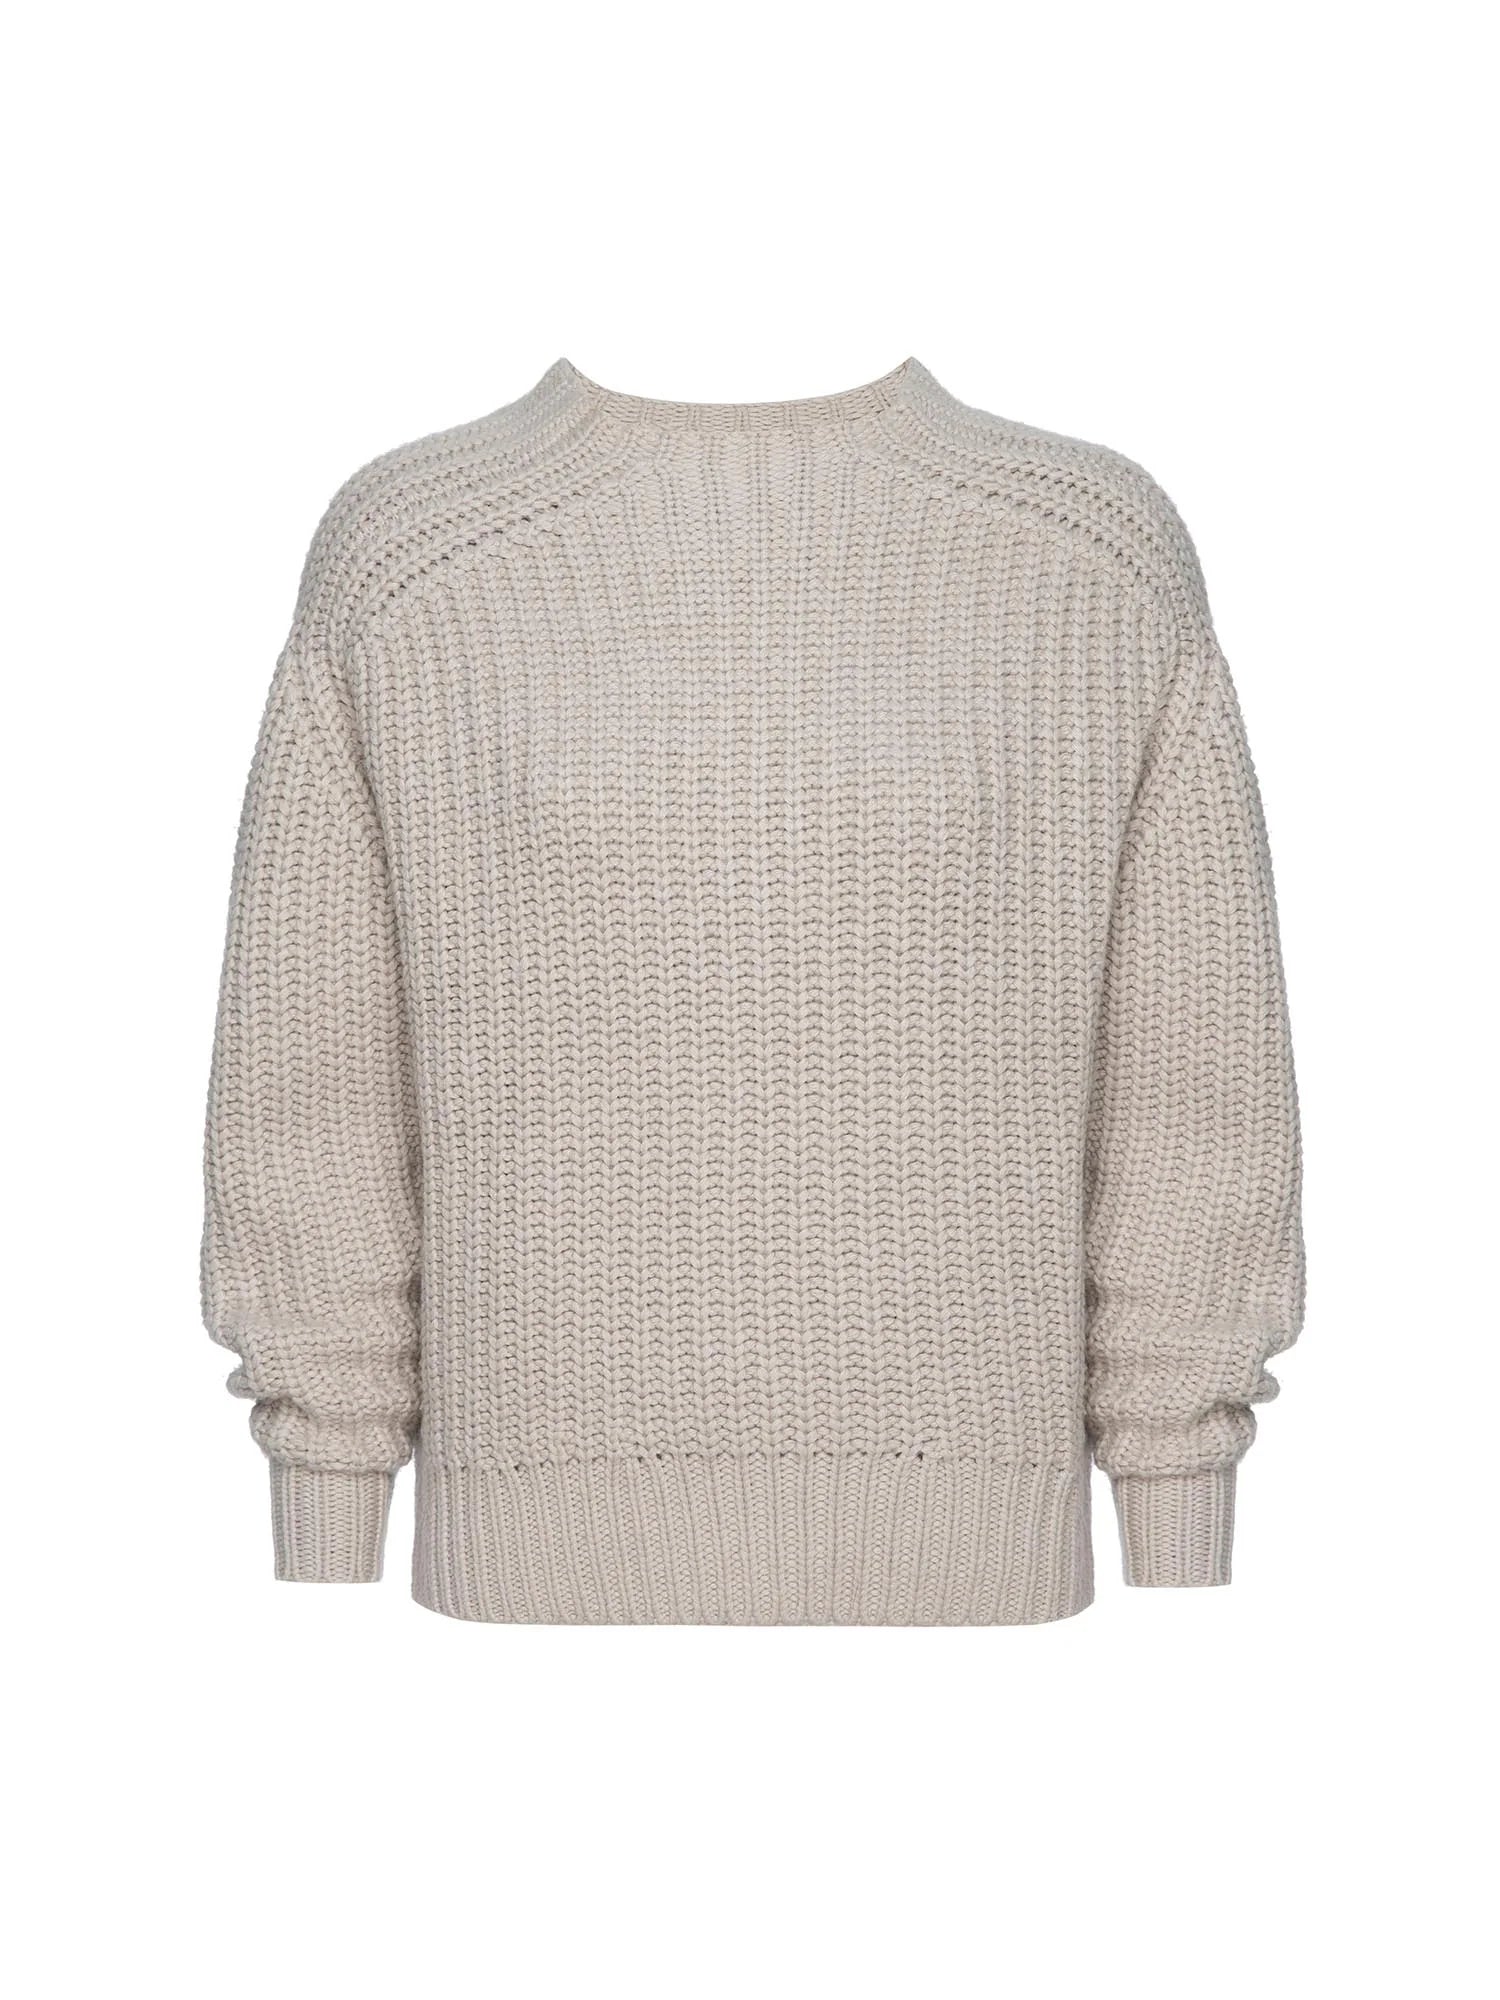 Beckett Pullover Sweater